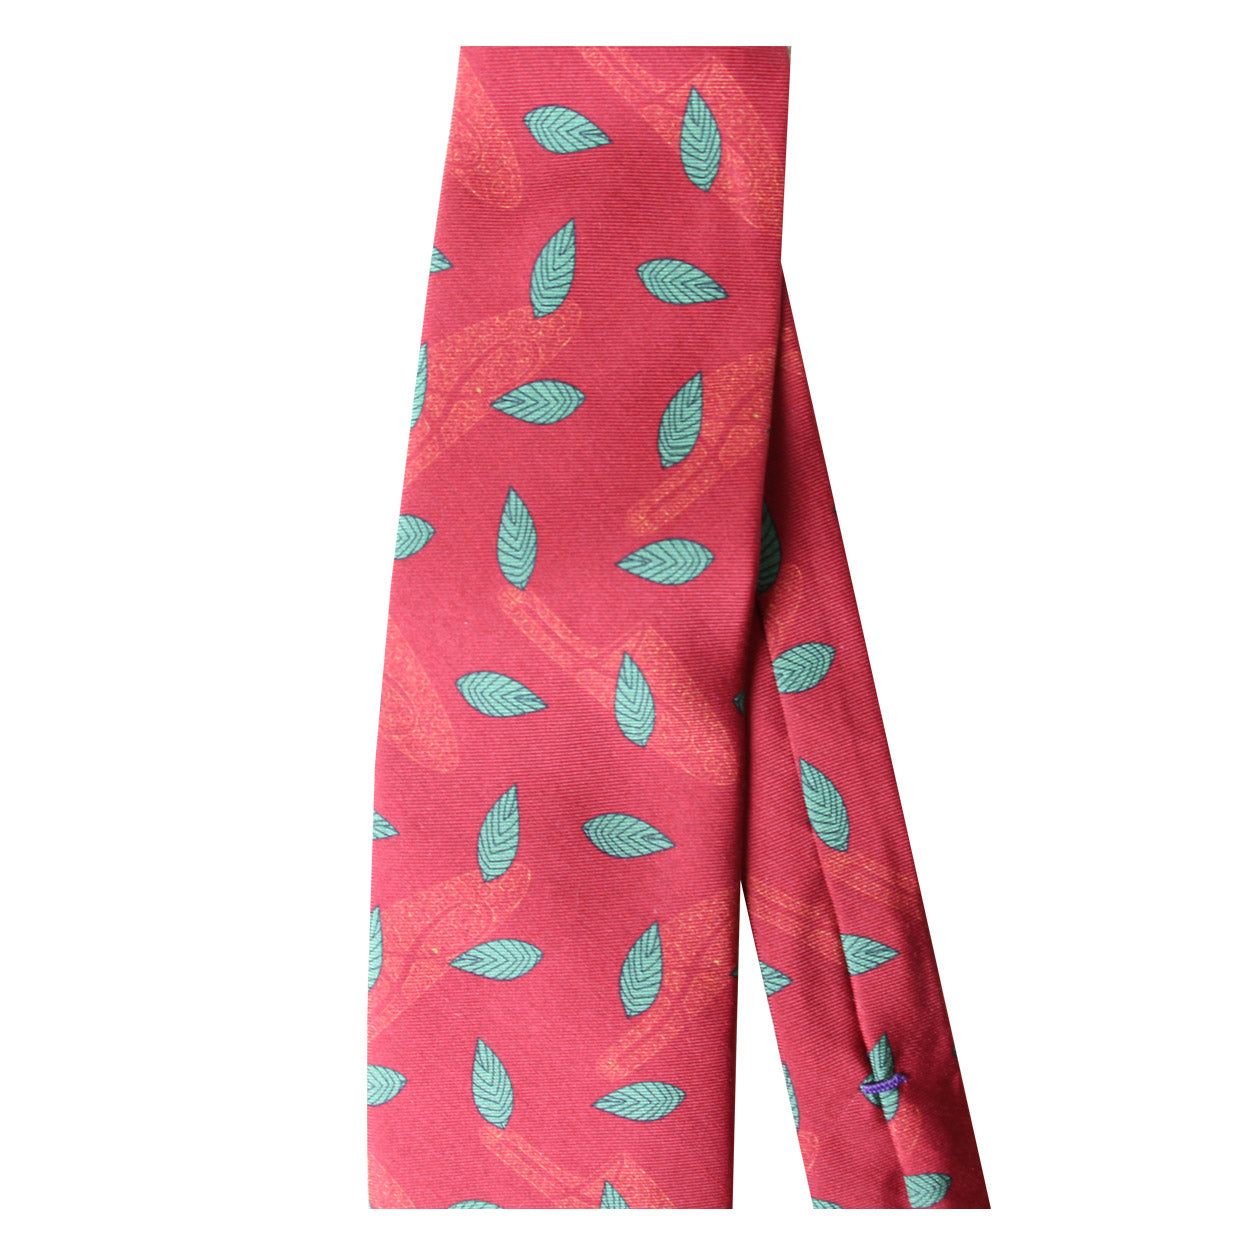 Cravate Parure madder imprimé Platines et feuilles - Garance motif ocre mousse